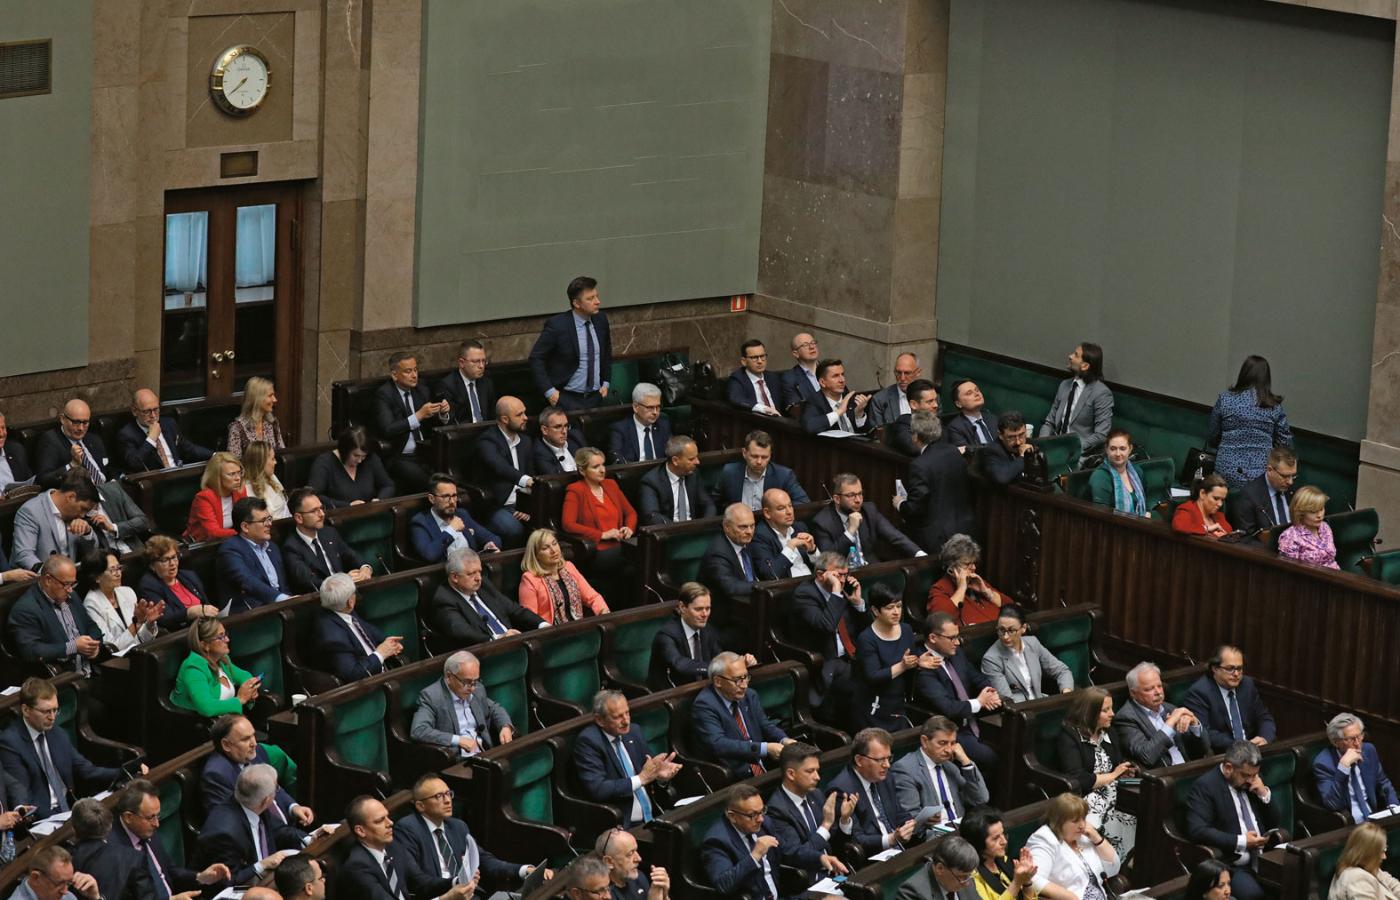 W zamian za poparcie uchwalenia prezydenckiego projektu Zbigniew Ziobro dostał głosy PiS przeciwko wnioskowi opozycji o odwołanie ministra sprawiedliwości.